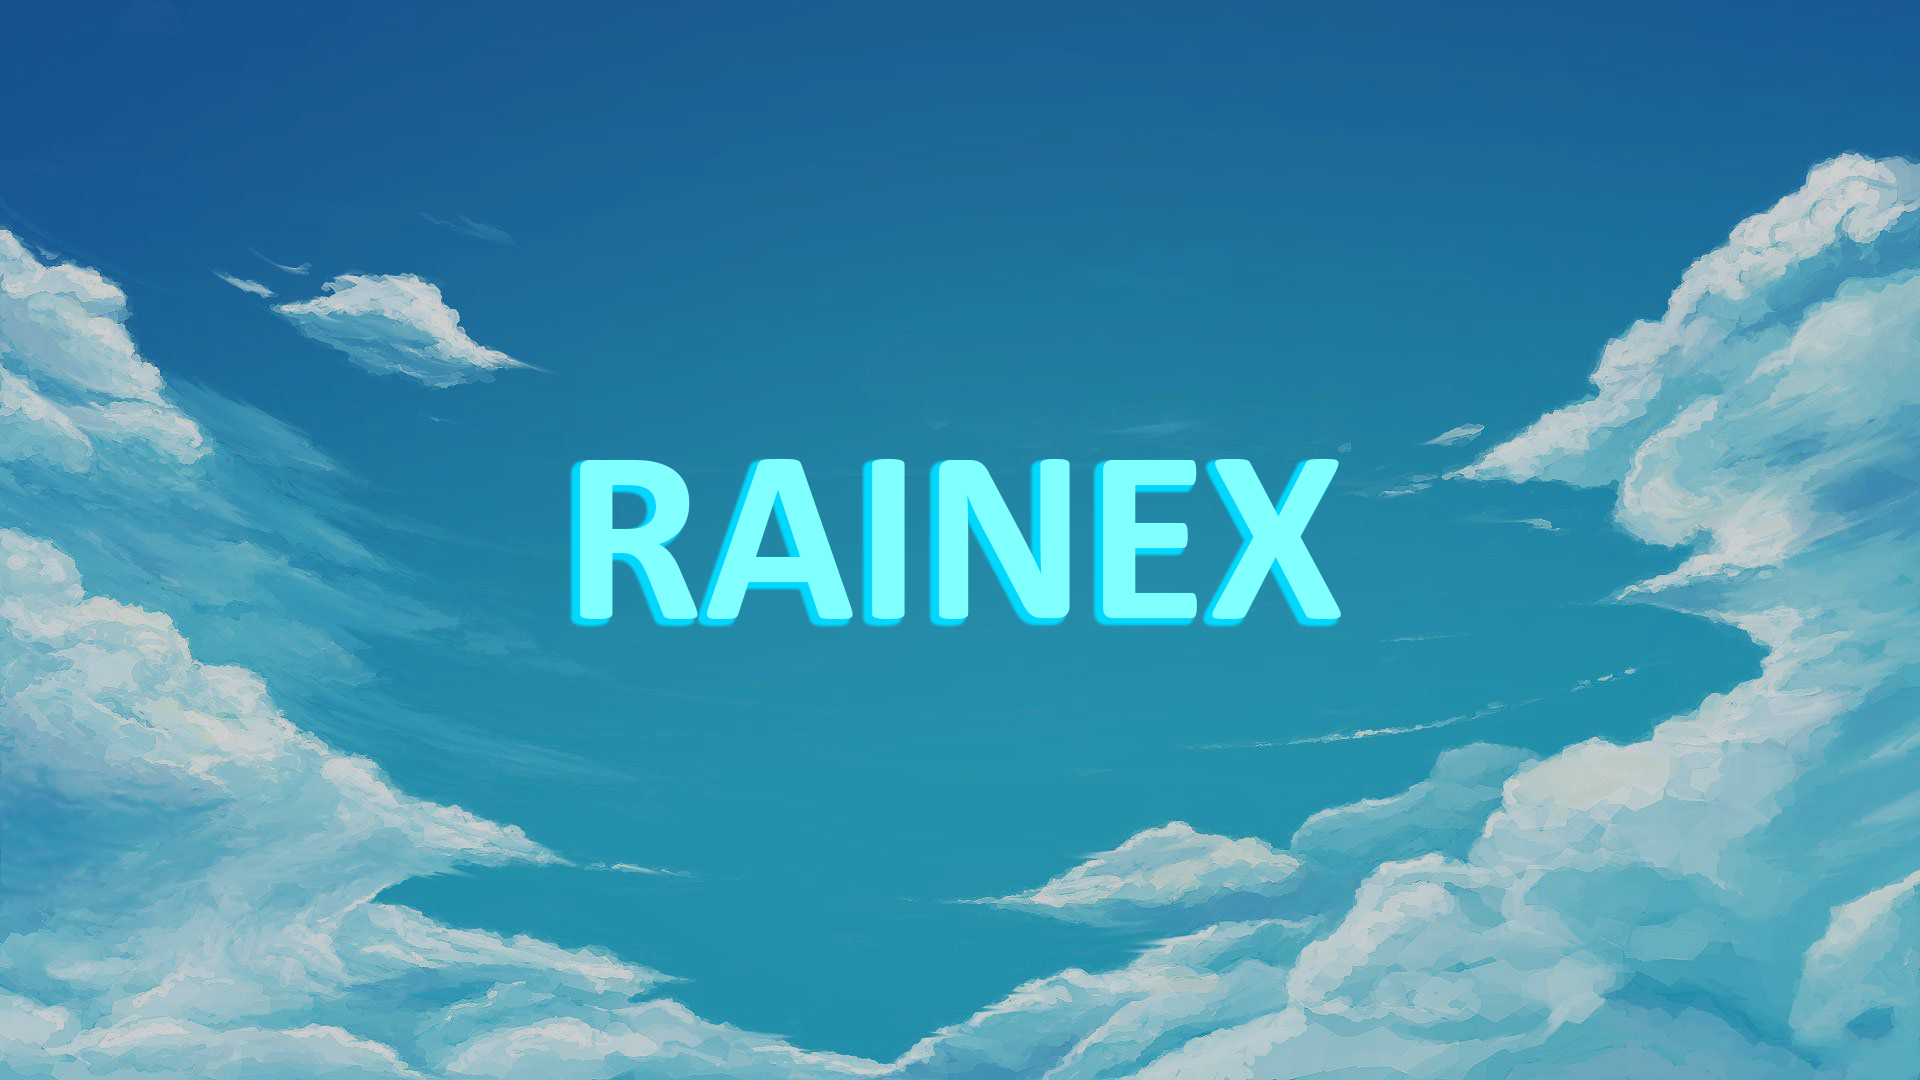 Rainex – Gaming content